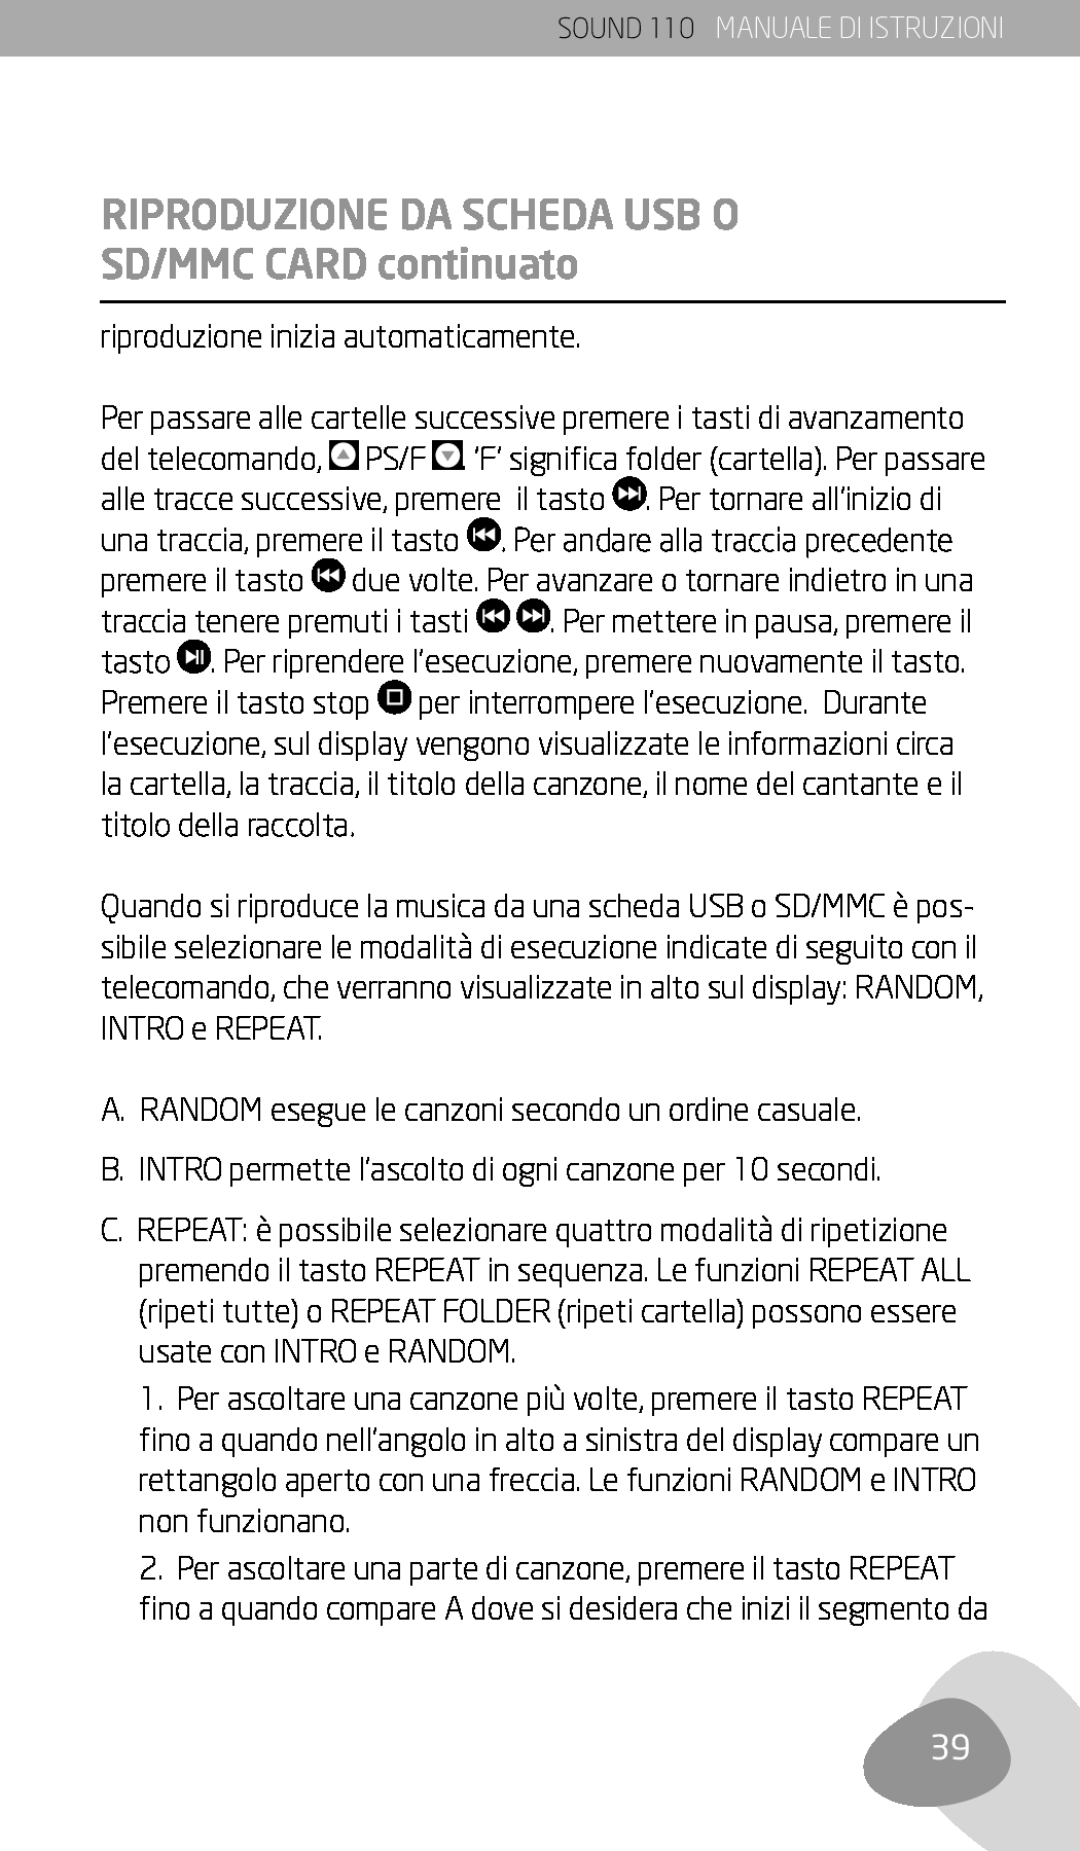 Eton 110 owner manual Riproduzione Da Scheda Usb O, SD/MMC CARD continuato 